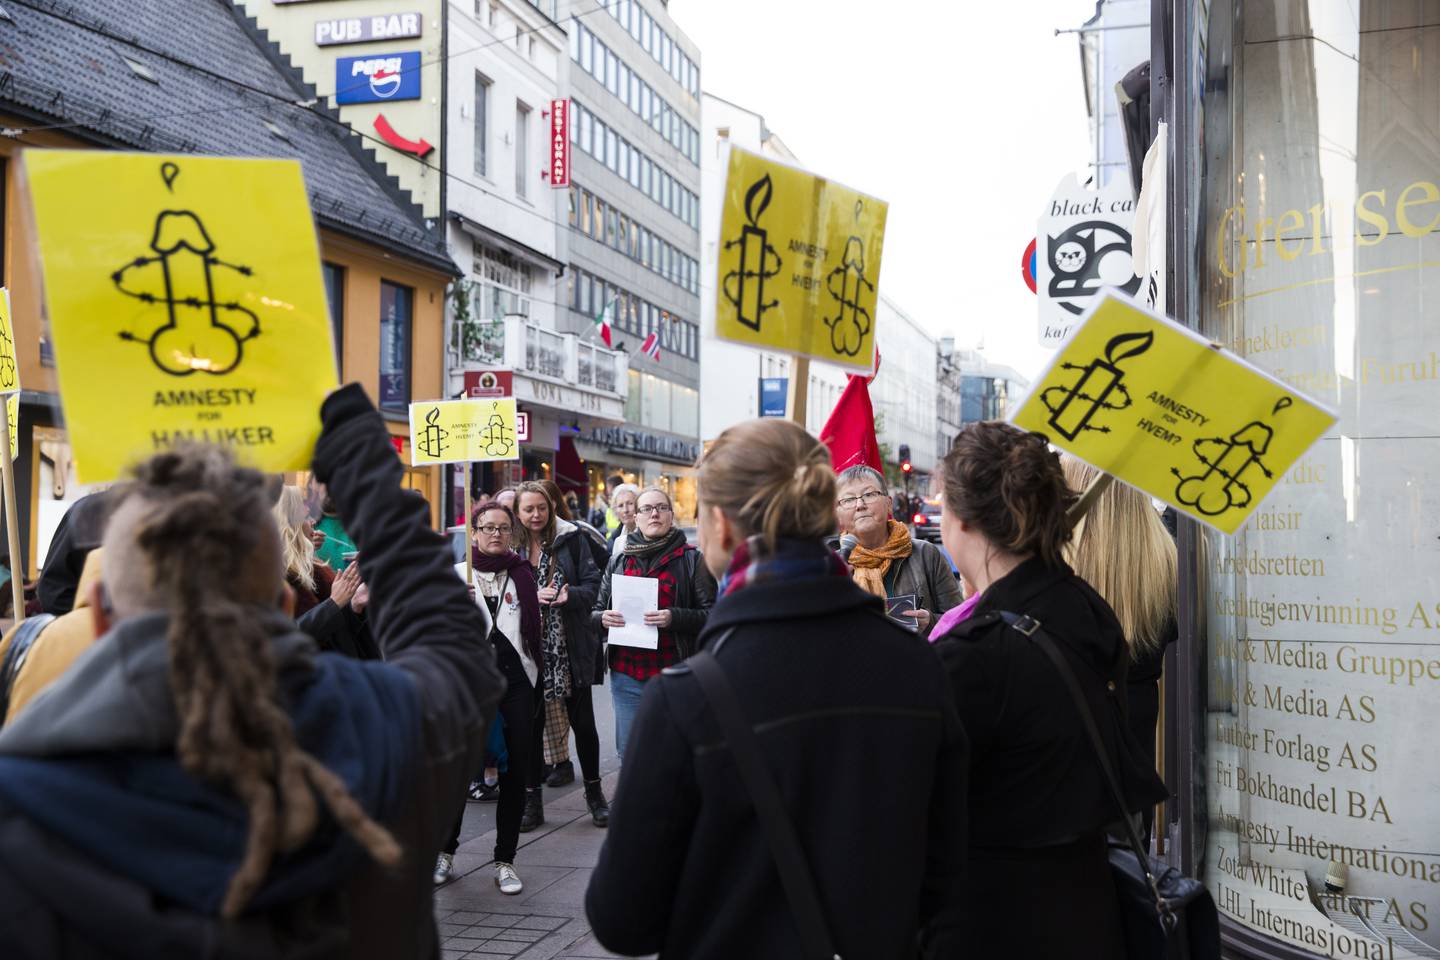 Norske aktivister demonstrerte utenfor Amnestys norgeskontor, i Grensen 3, under parolen "No Amnesty for pimps and johns!" i oktober 2015.
Kvinnefronten og Kvinnegruppa Ottar tok initiativ til demonstrasjonen. Demonstrasjonen var en del av en internasjonal aksjon, og feminister over hele verden protesterte mot Amnesty denne dagen.  De verdensomspennende demonstrasjonene ble utløst av at Amnesty International på sin kongress i august samme år, bestemte at organisasjonen skulle arbeide for å avkriminalisere alle parter involvert i prostitusjonshandel.